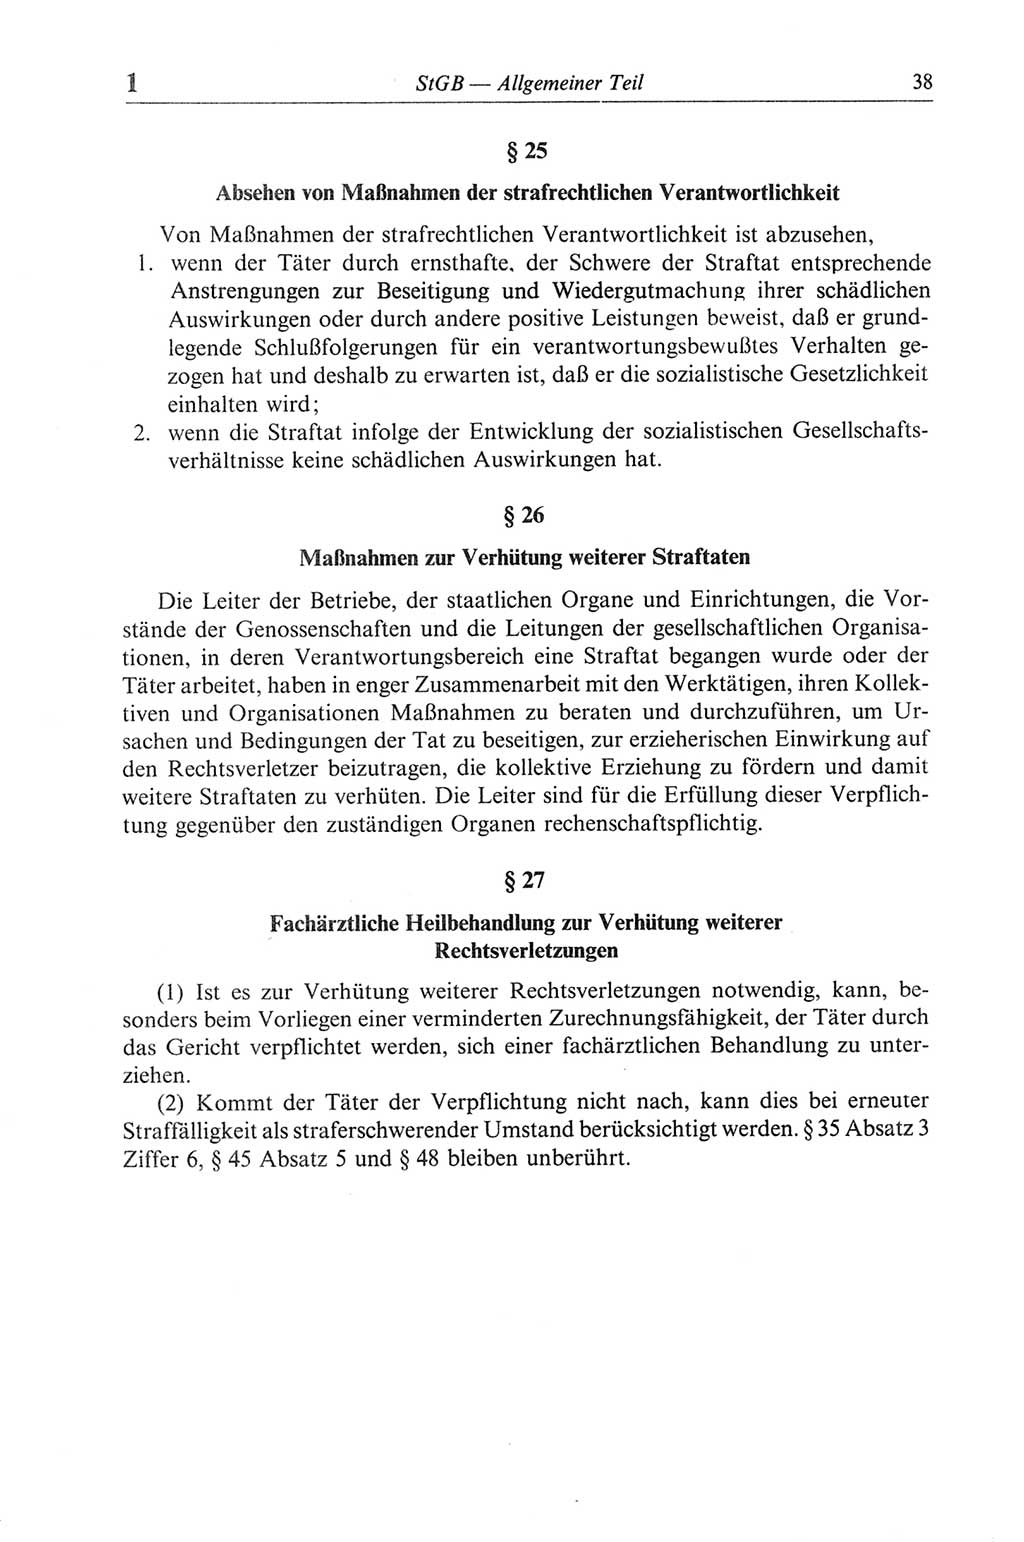 Strafgesetzbuch (StGB) der Deutschen Demokratischen Republik (DDR) und angrenzende Gesetze und Bestimmungen 1968, Seite 38 (StGB Ges. Best. DDR 1968, S. 38)